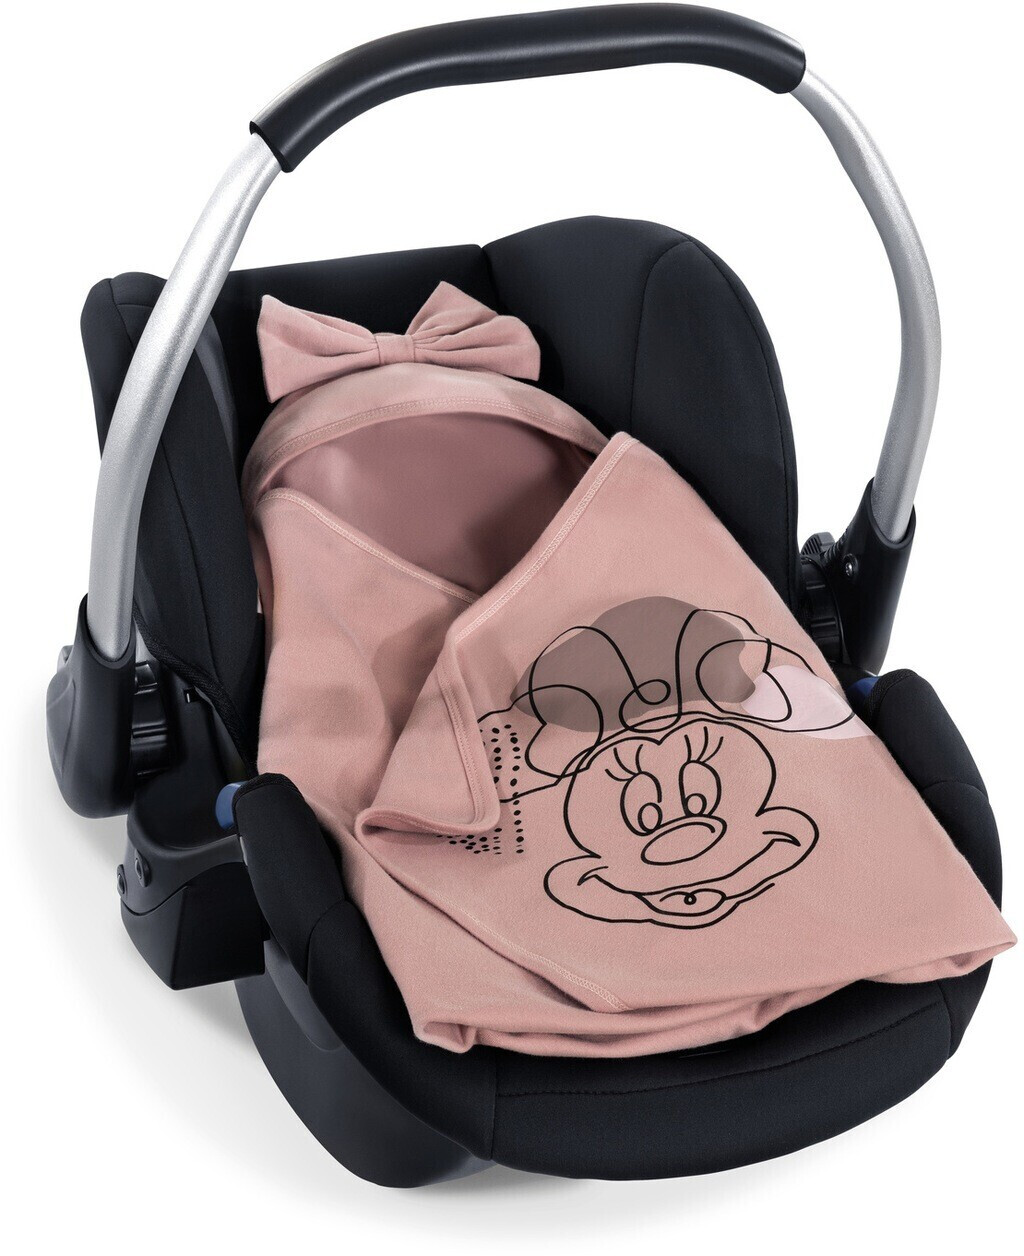 Hauck Snuggle N Dream Minnie Mouse rose ab 44,90 € | Preisvergleich bei